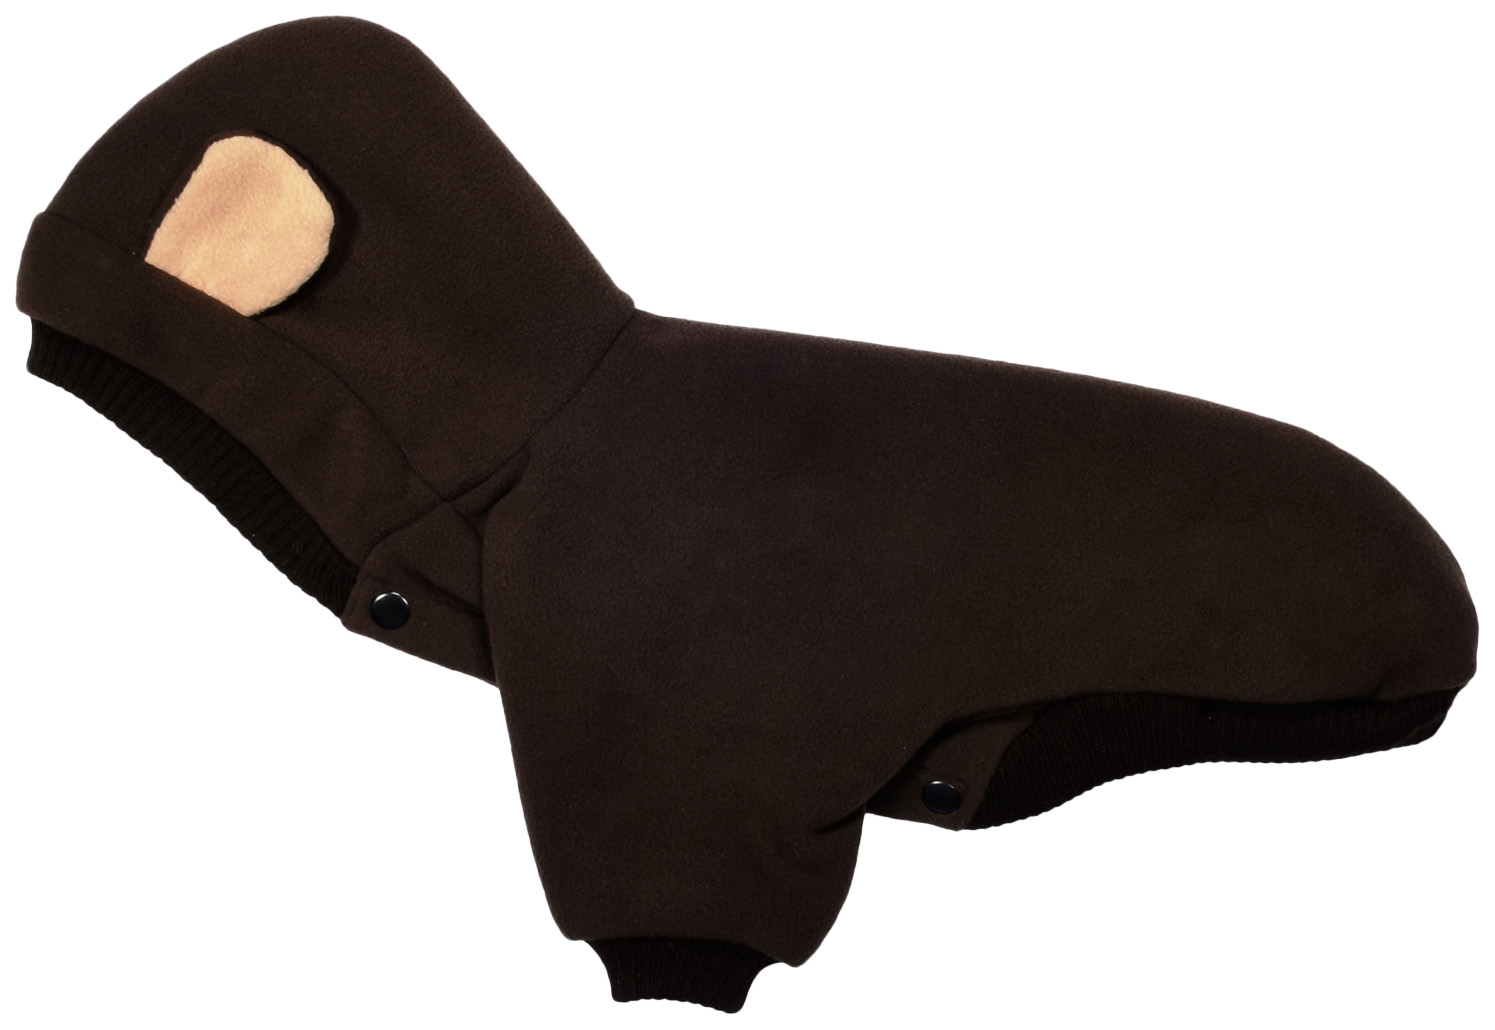 Толстовка для собак Tappi одежда Варгоши, унисекс, коричневый, S, длина спины 25 см